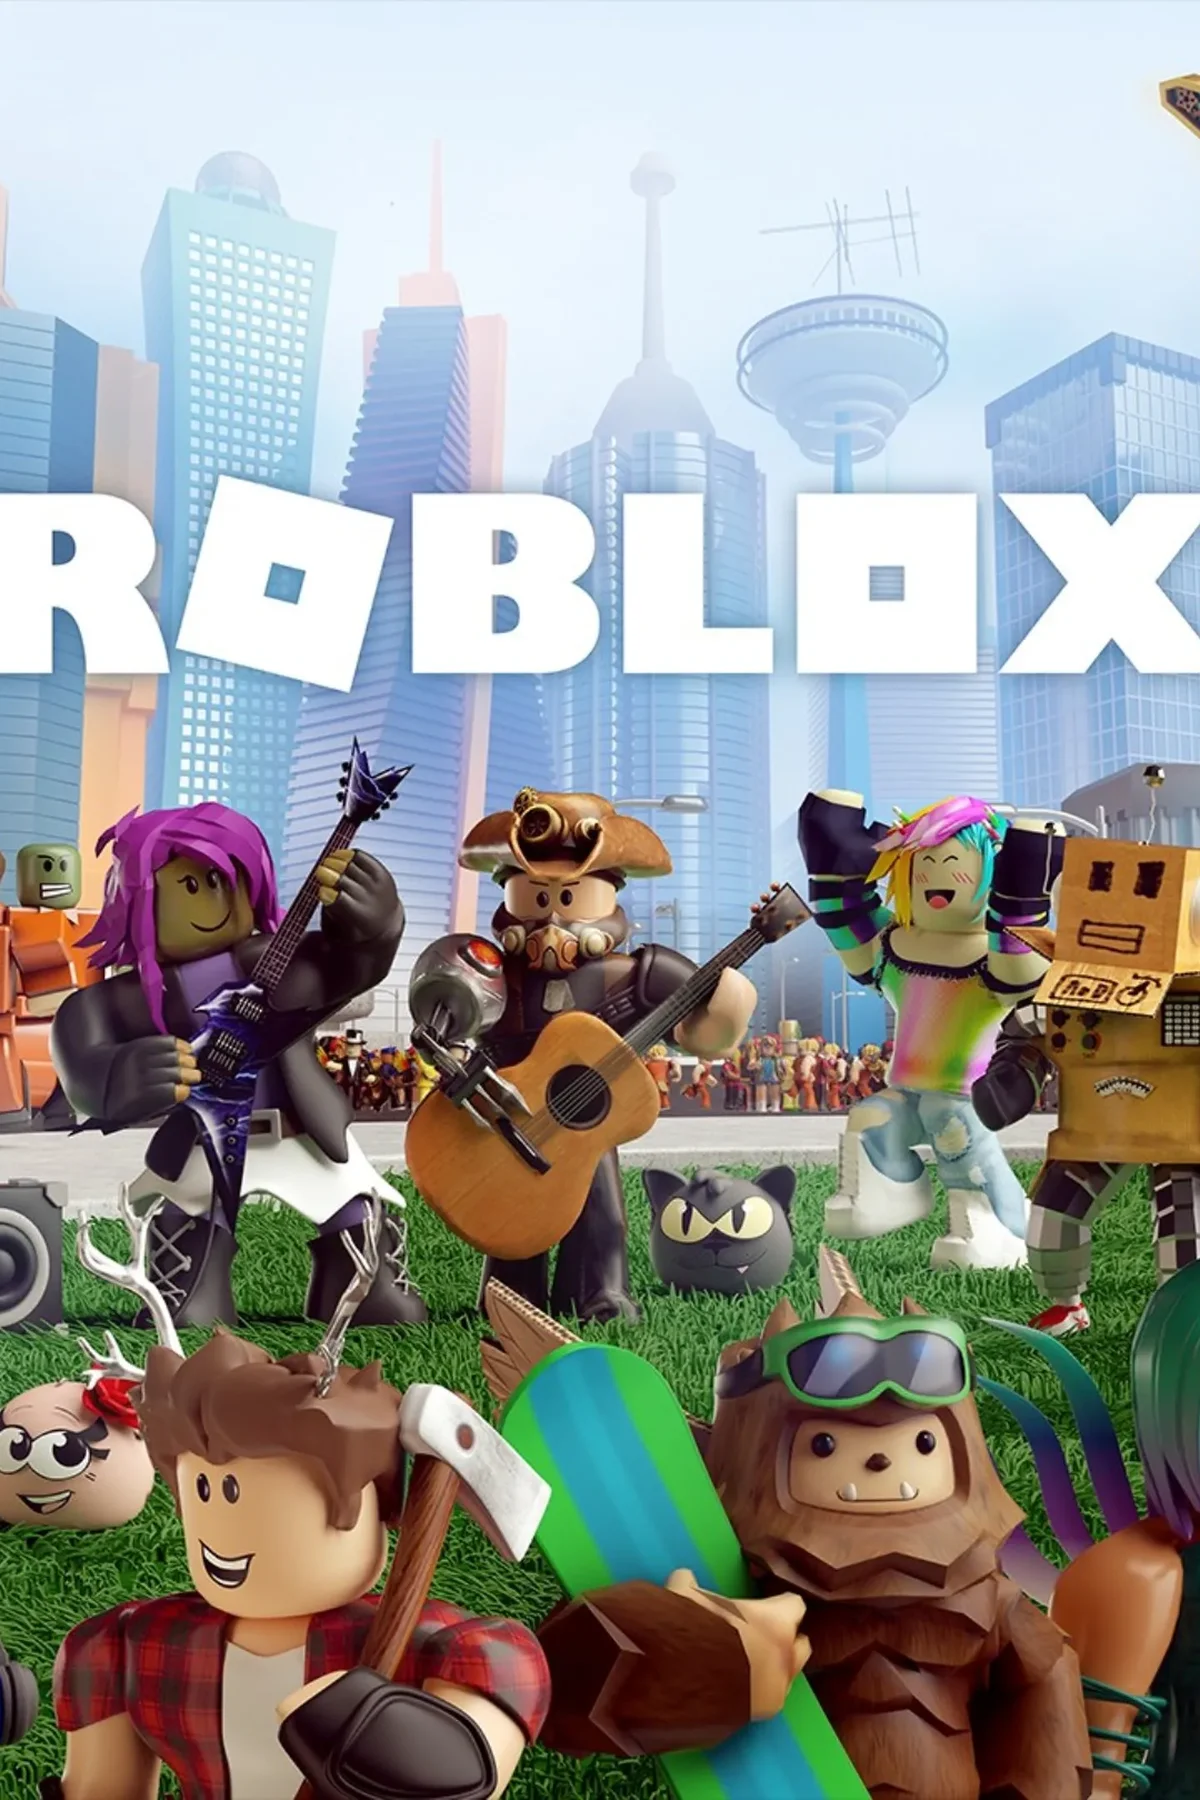 Roblox, la popular plataforma de juegos online, llegará a